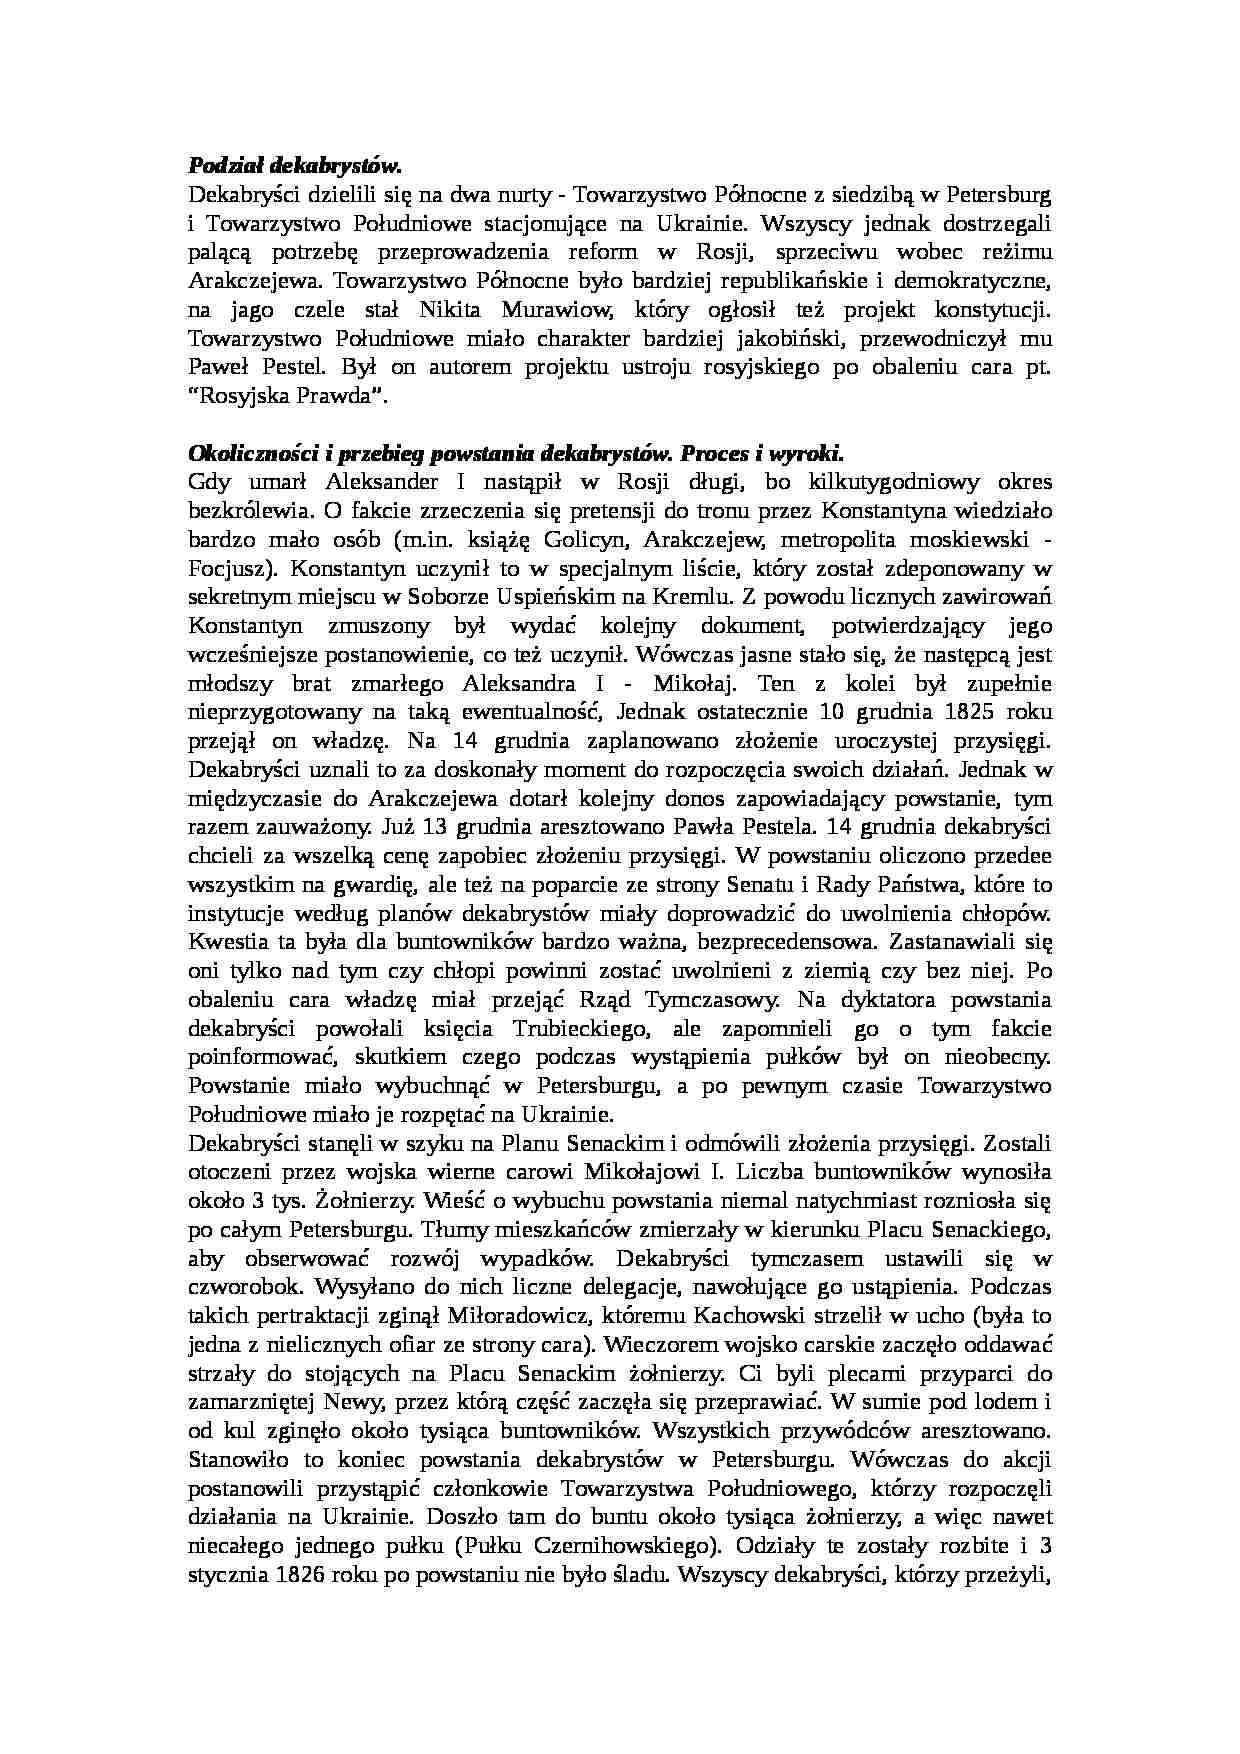 WYKŁAD Powstanie dekabrystów w Rosji (1825) - strona 1